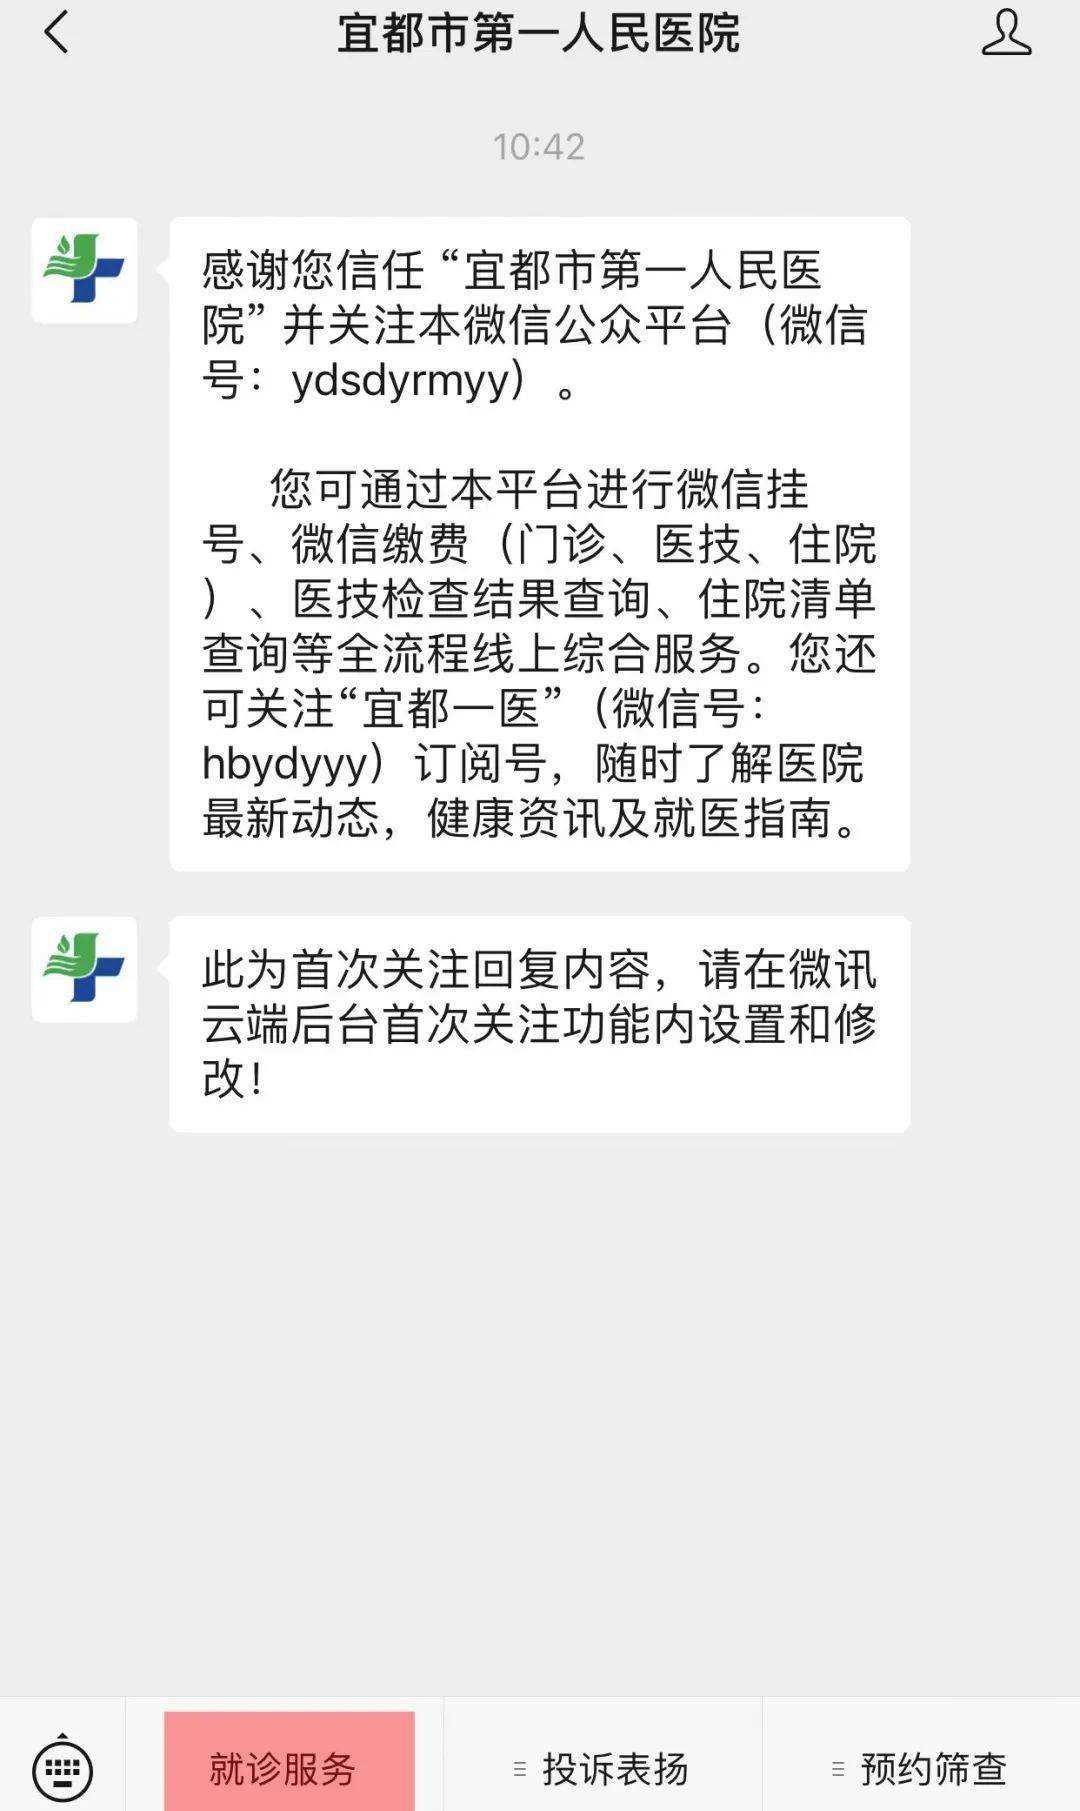 包含北京市大兴区人民医院挂号号贩子联系方式第一时间安排联系方式哪家好的词条